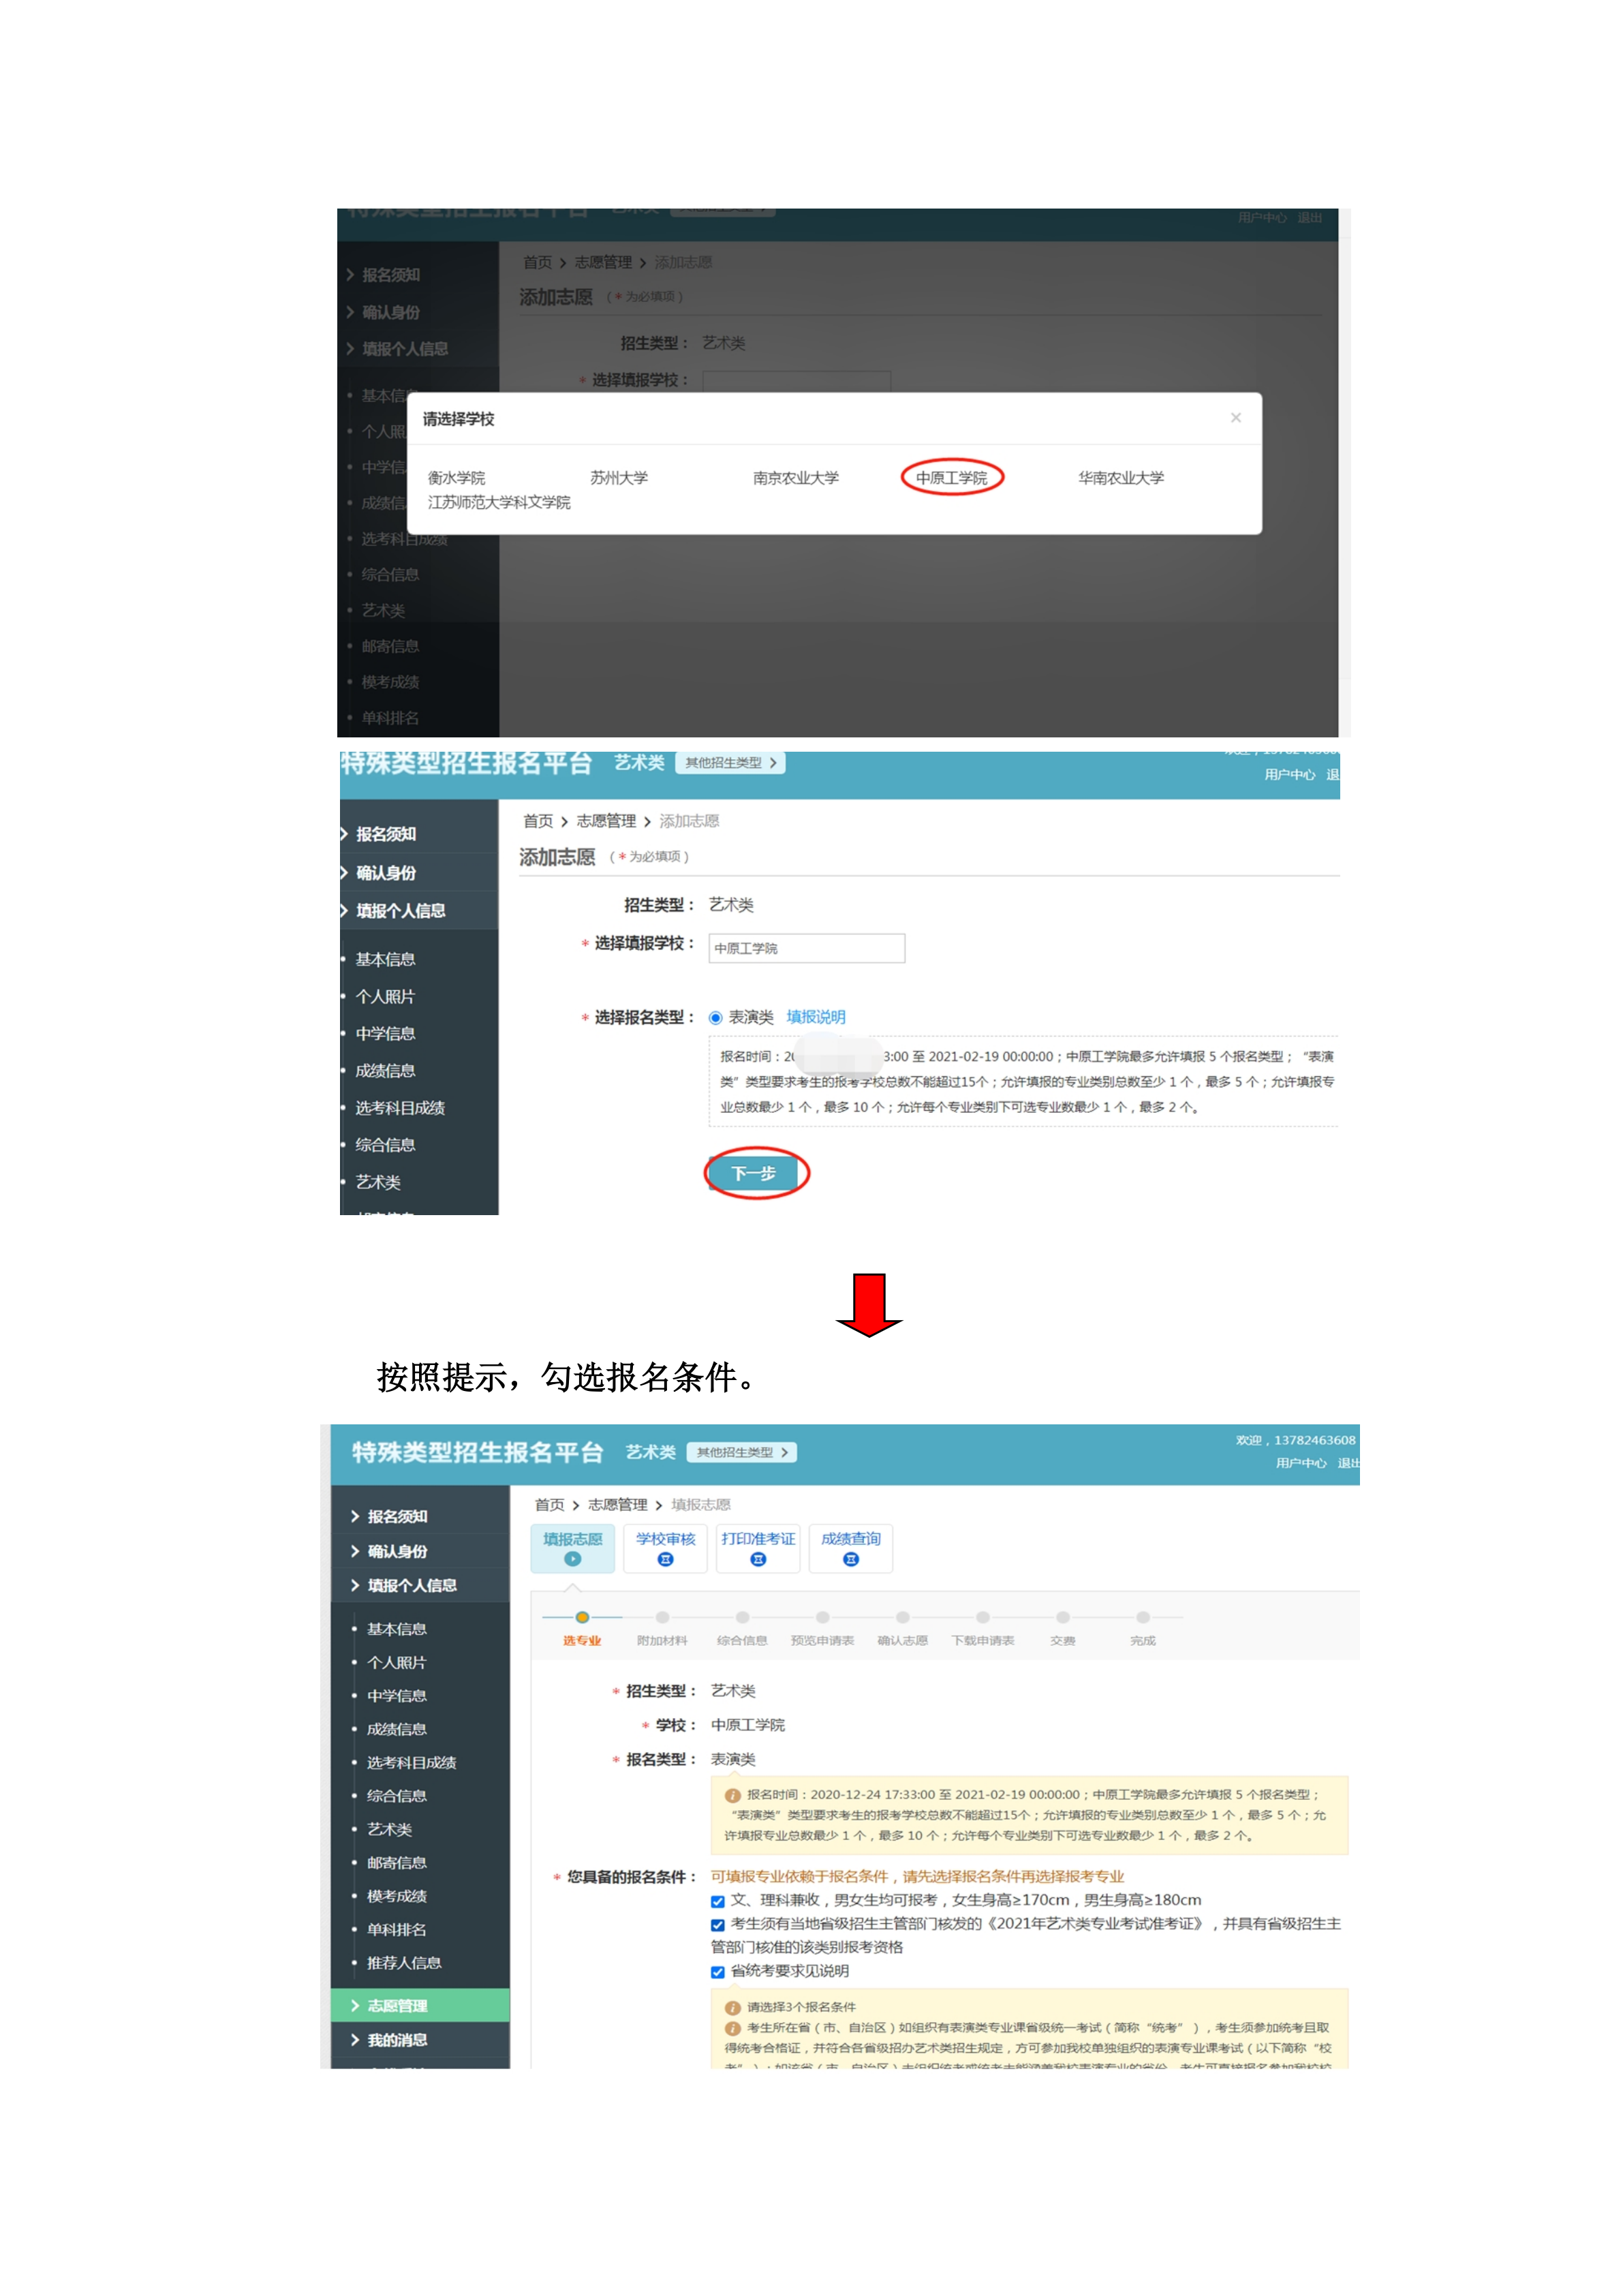 中原工学院表演专业网上报名流程(1)_7.png